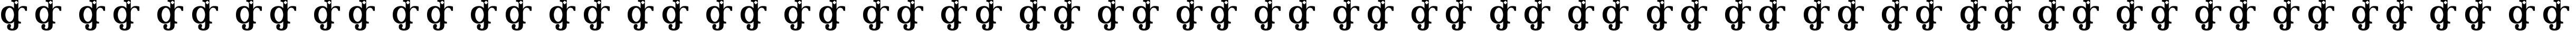 Пример написания русского алфавита шрифтом River Avenue